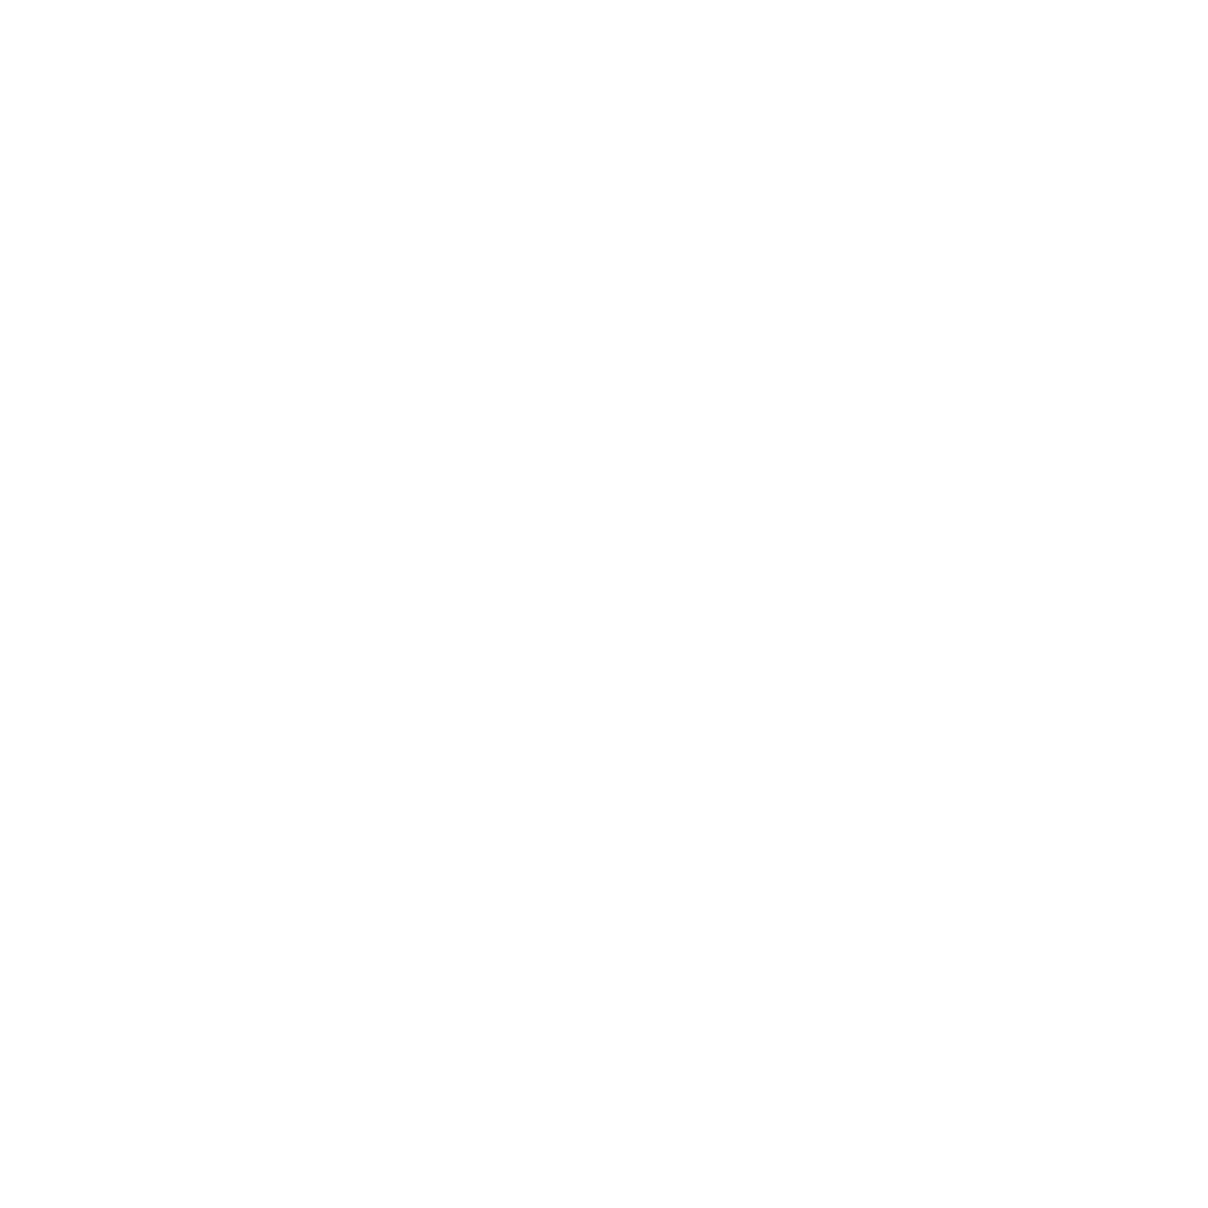 Clark & Lewie's